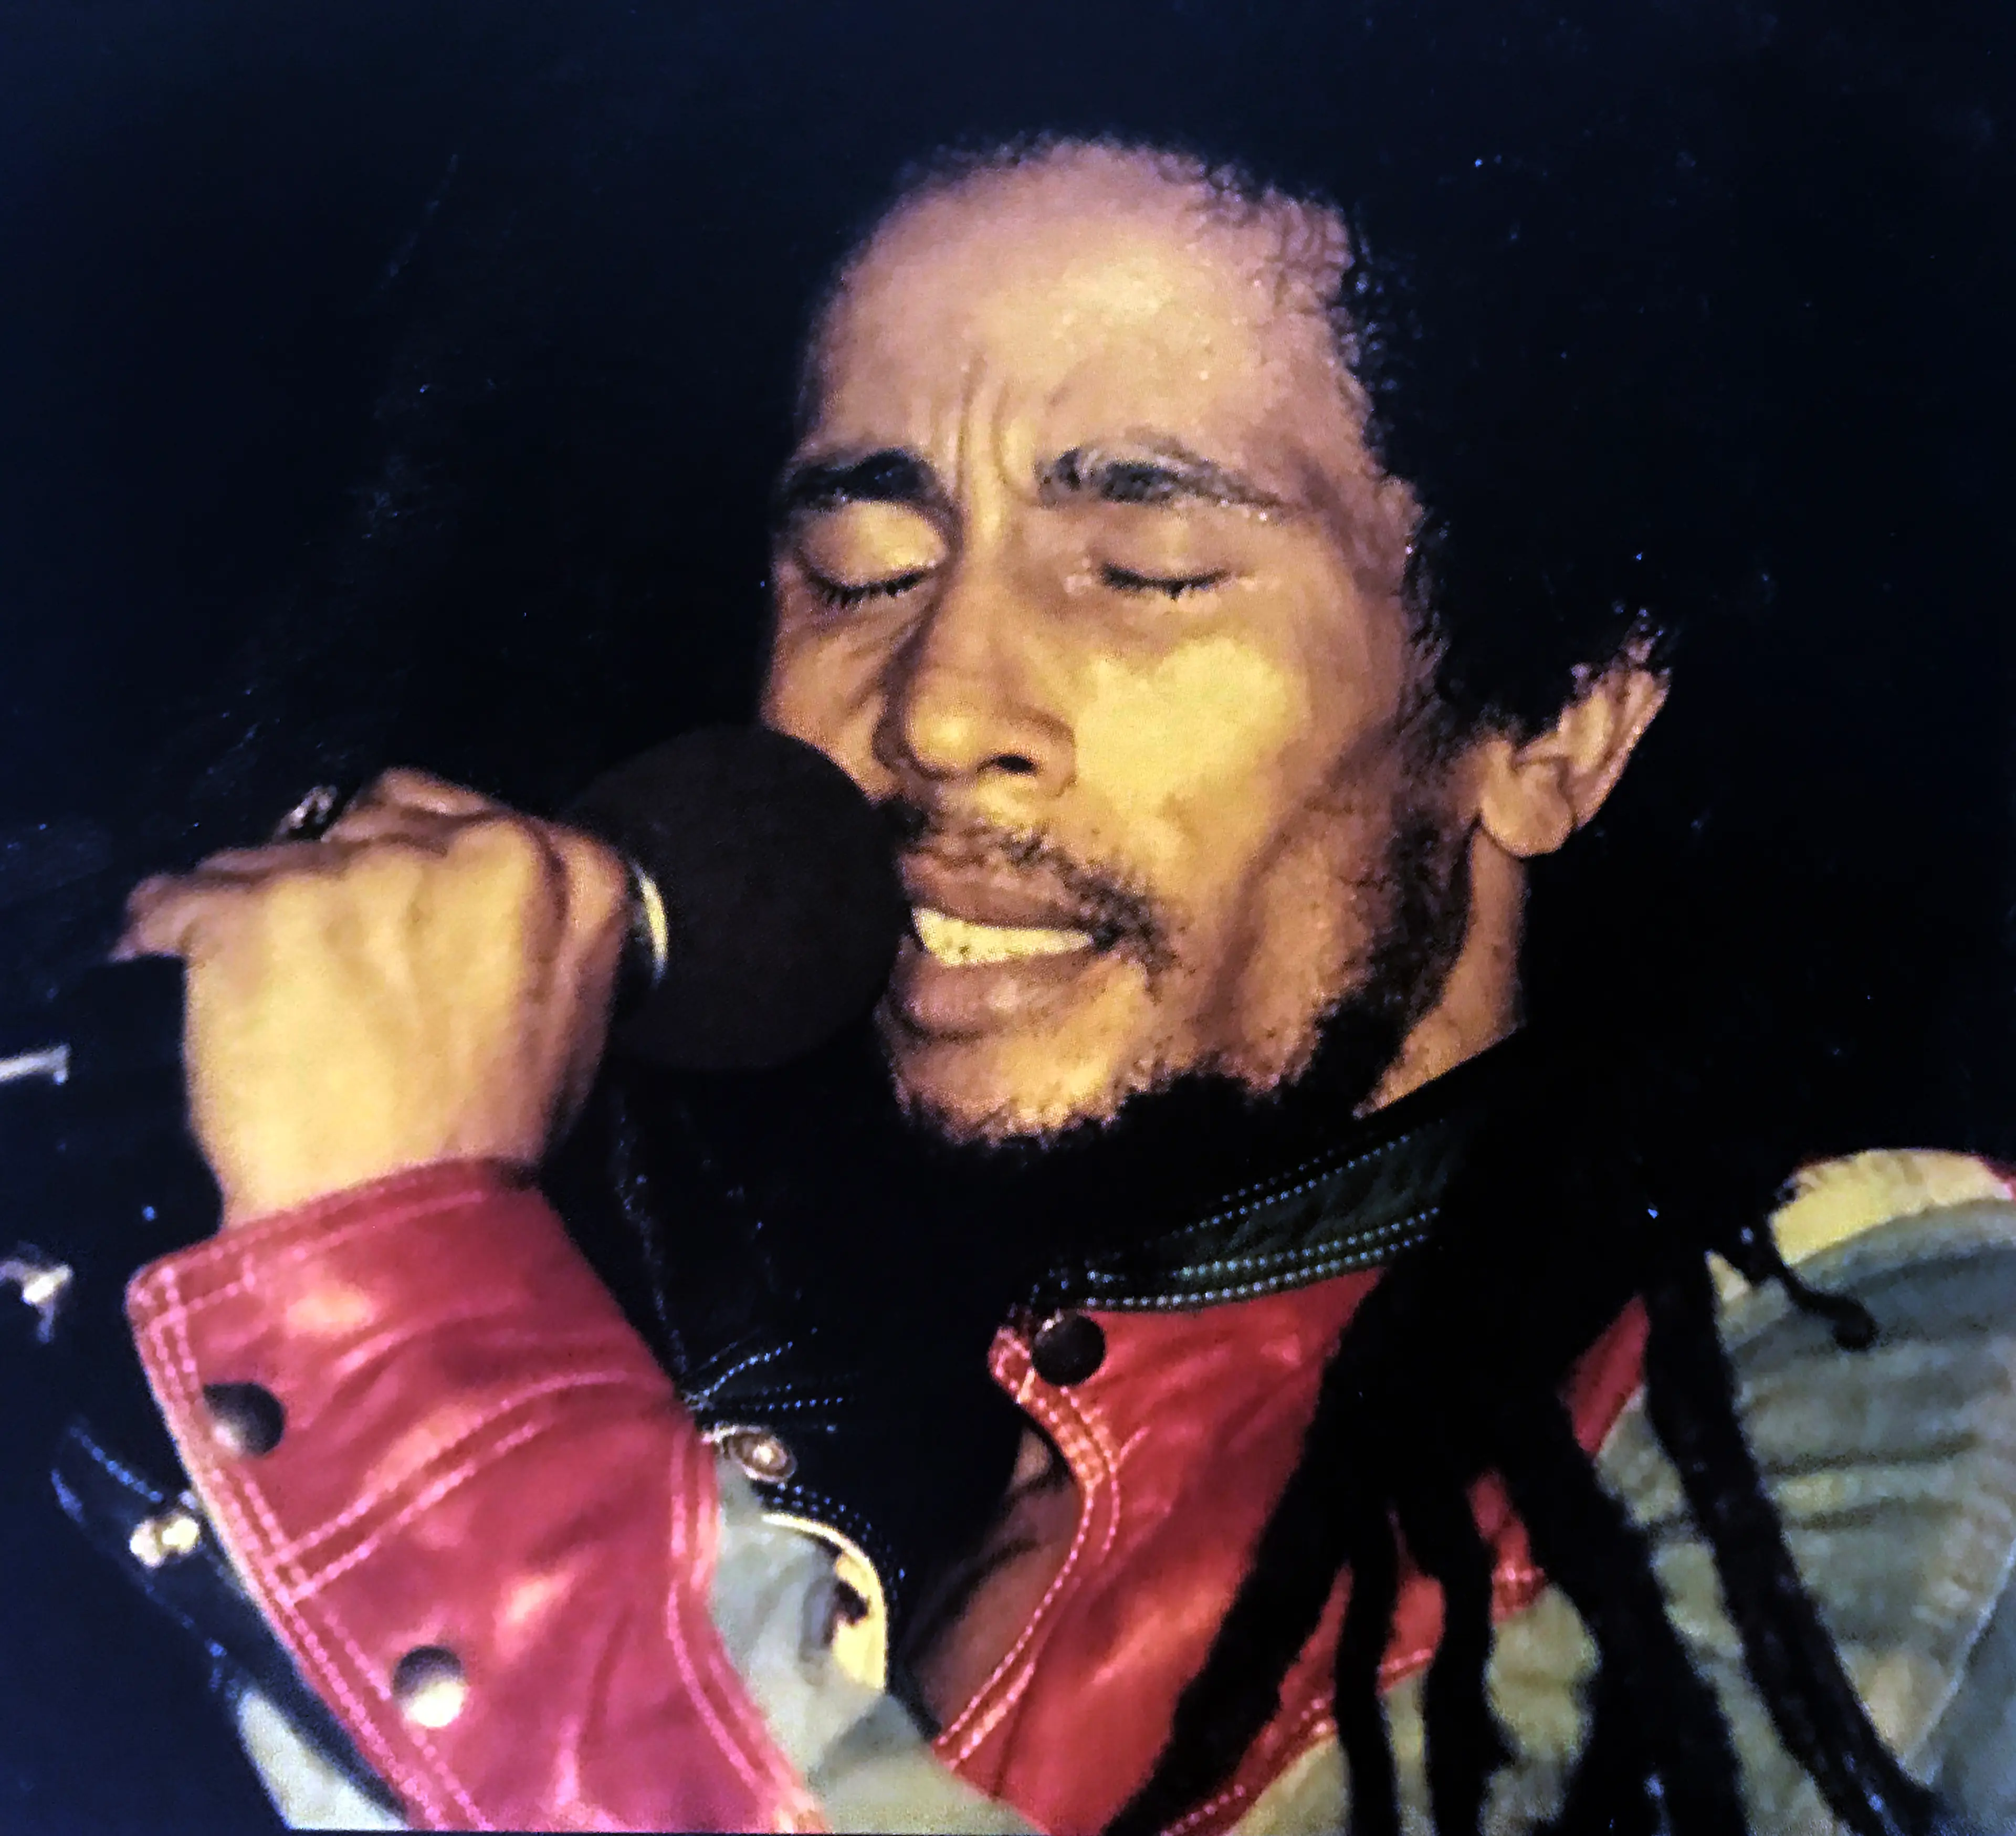 Bob Marley performing live